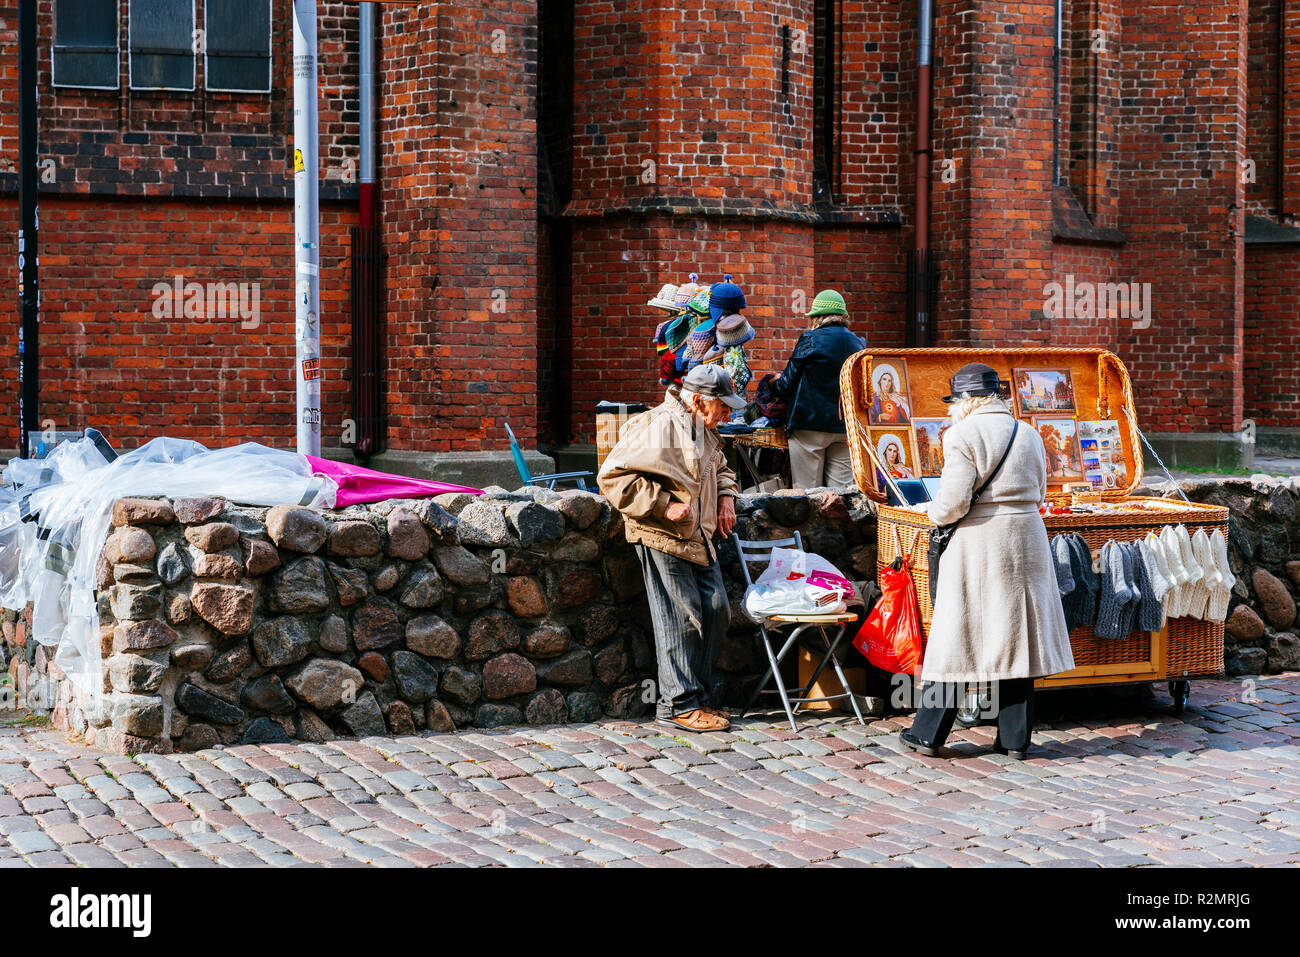 Dans le centre du marché, vente d'artisanat. Vieille ville de Riga. Riga, Lettonie, Pays Baltes, Europe Banque D'Images